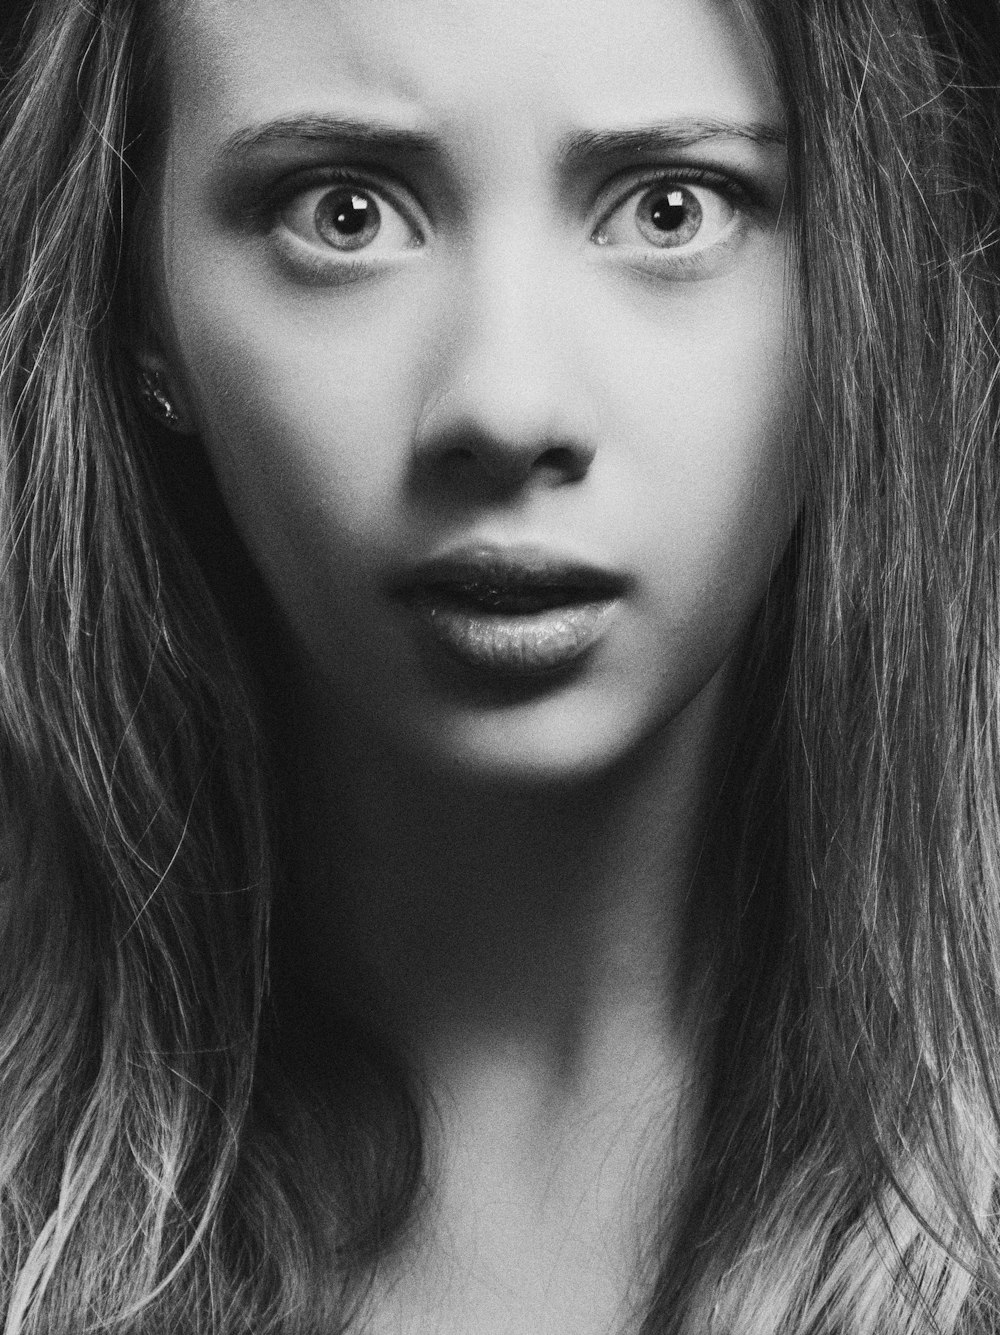 Una foto en blanco y negro de la cara de una mujer